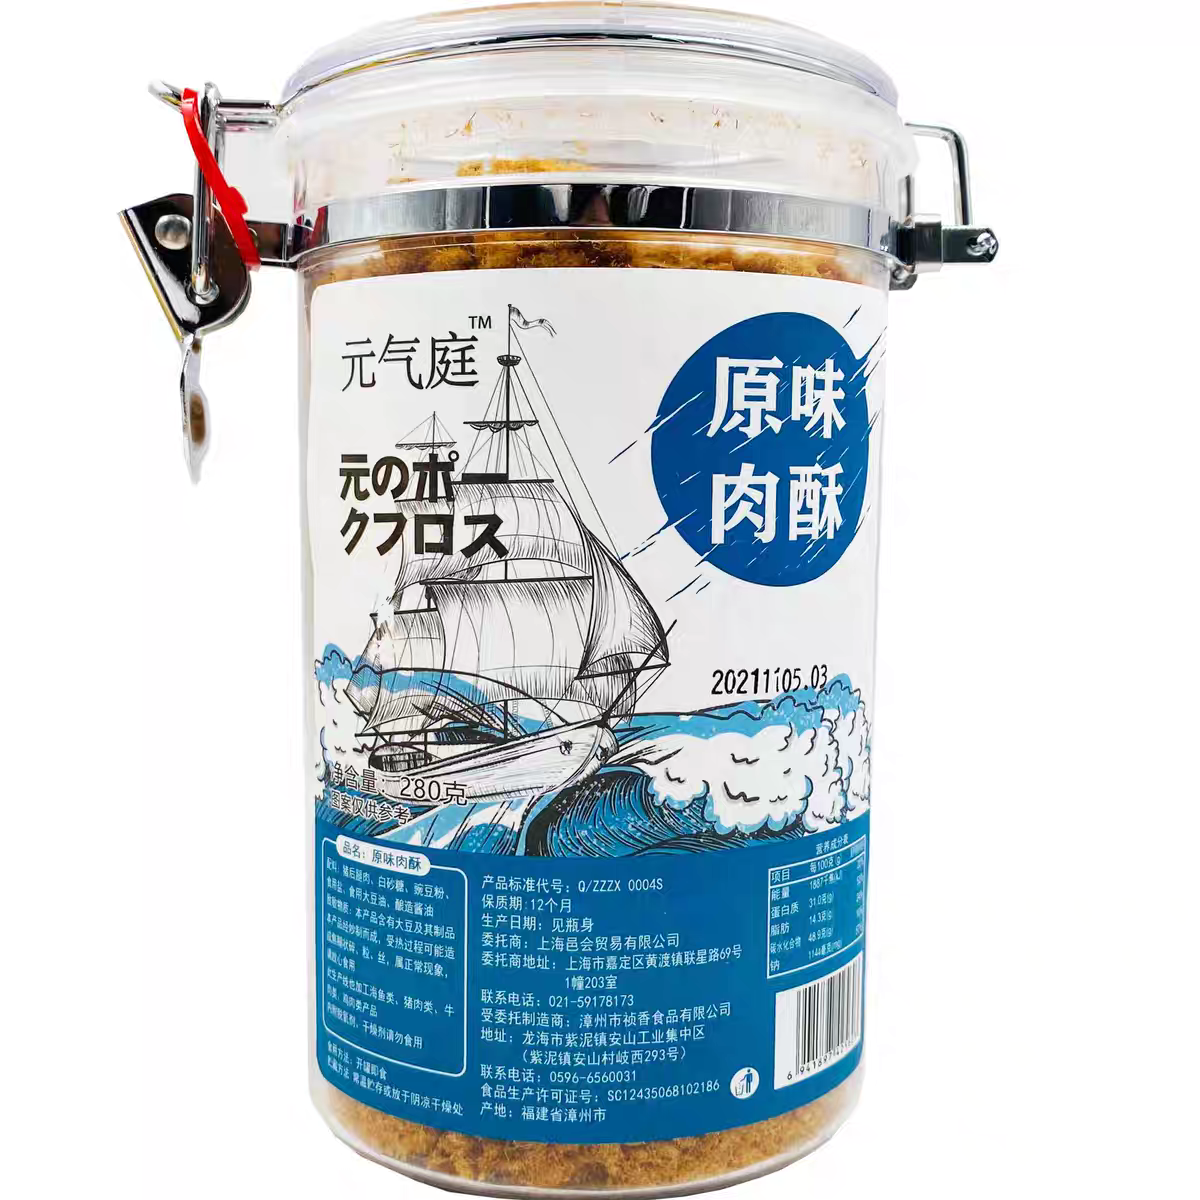 新品特卖原味鳕鱼/金枪鱼鱼松300g大罐装营养鱼肉松寿司拌饭-封面